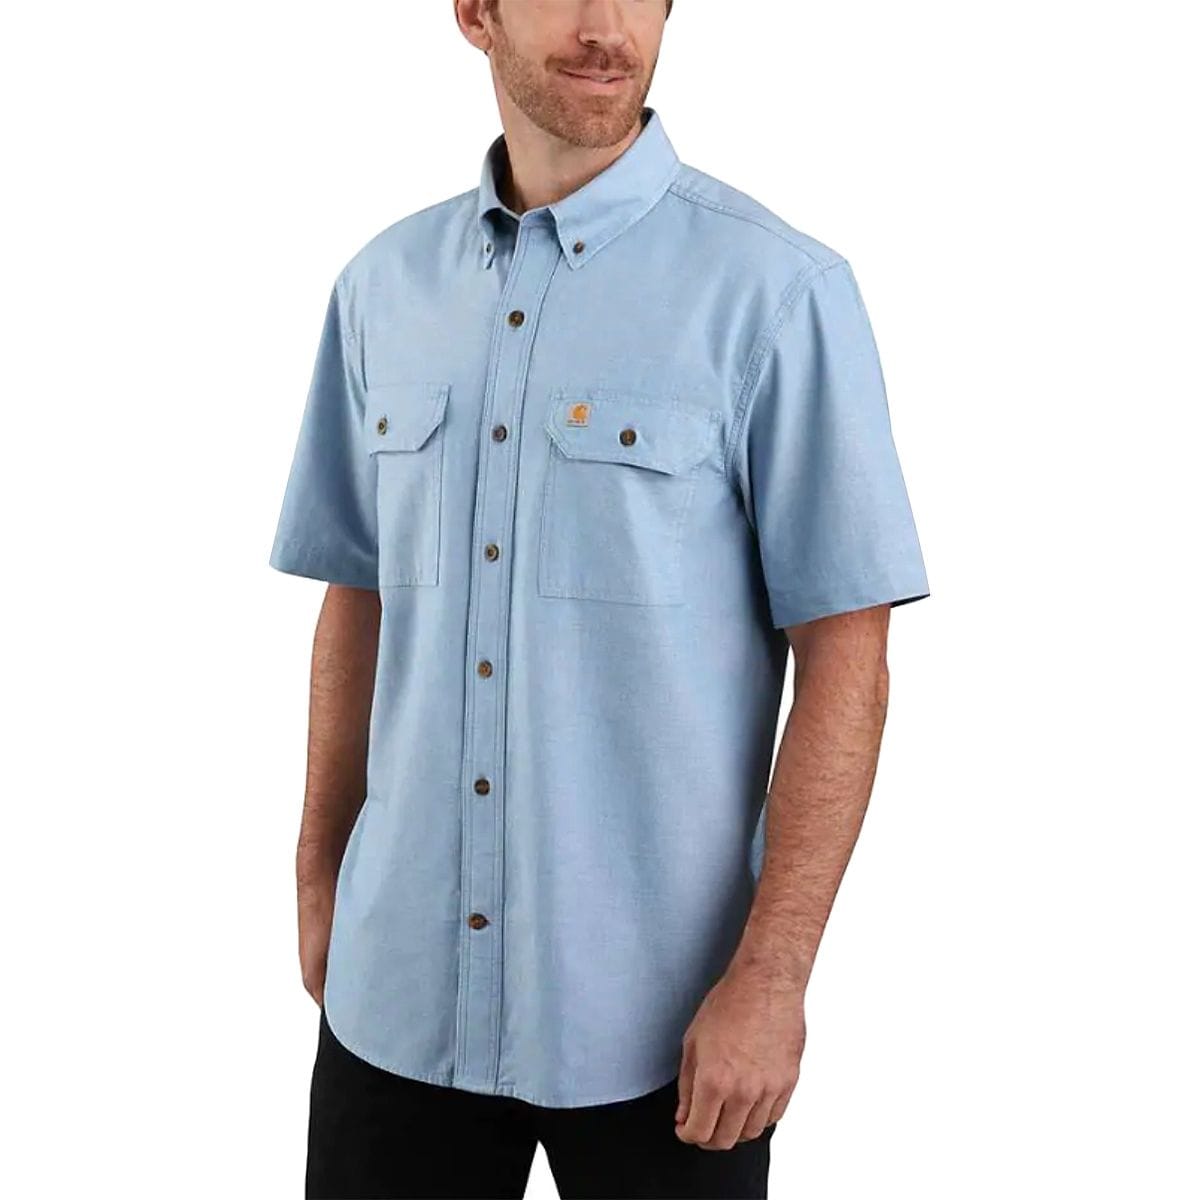 TW369 Original Fit Shirt - Men